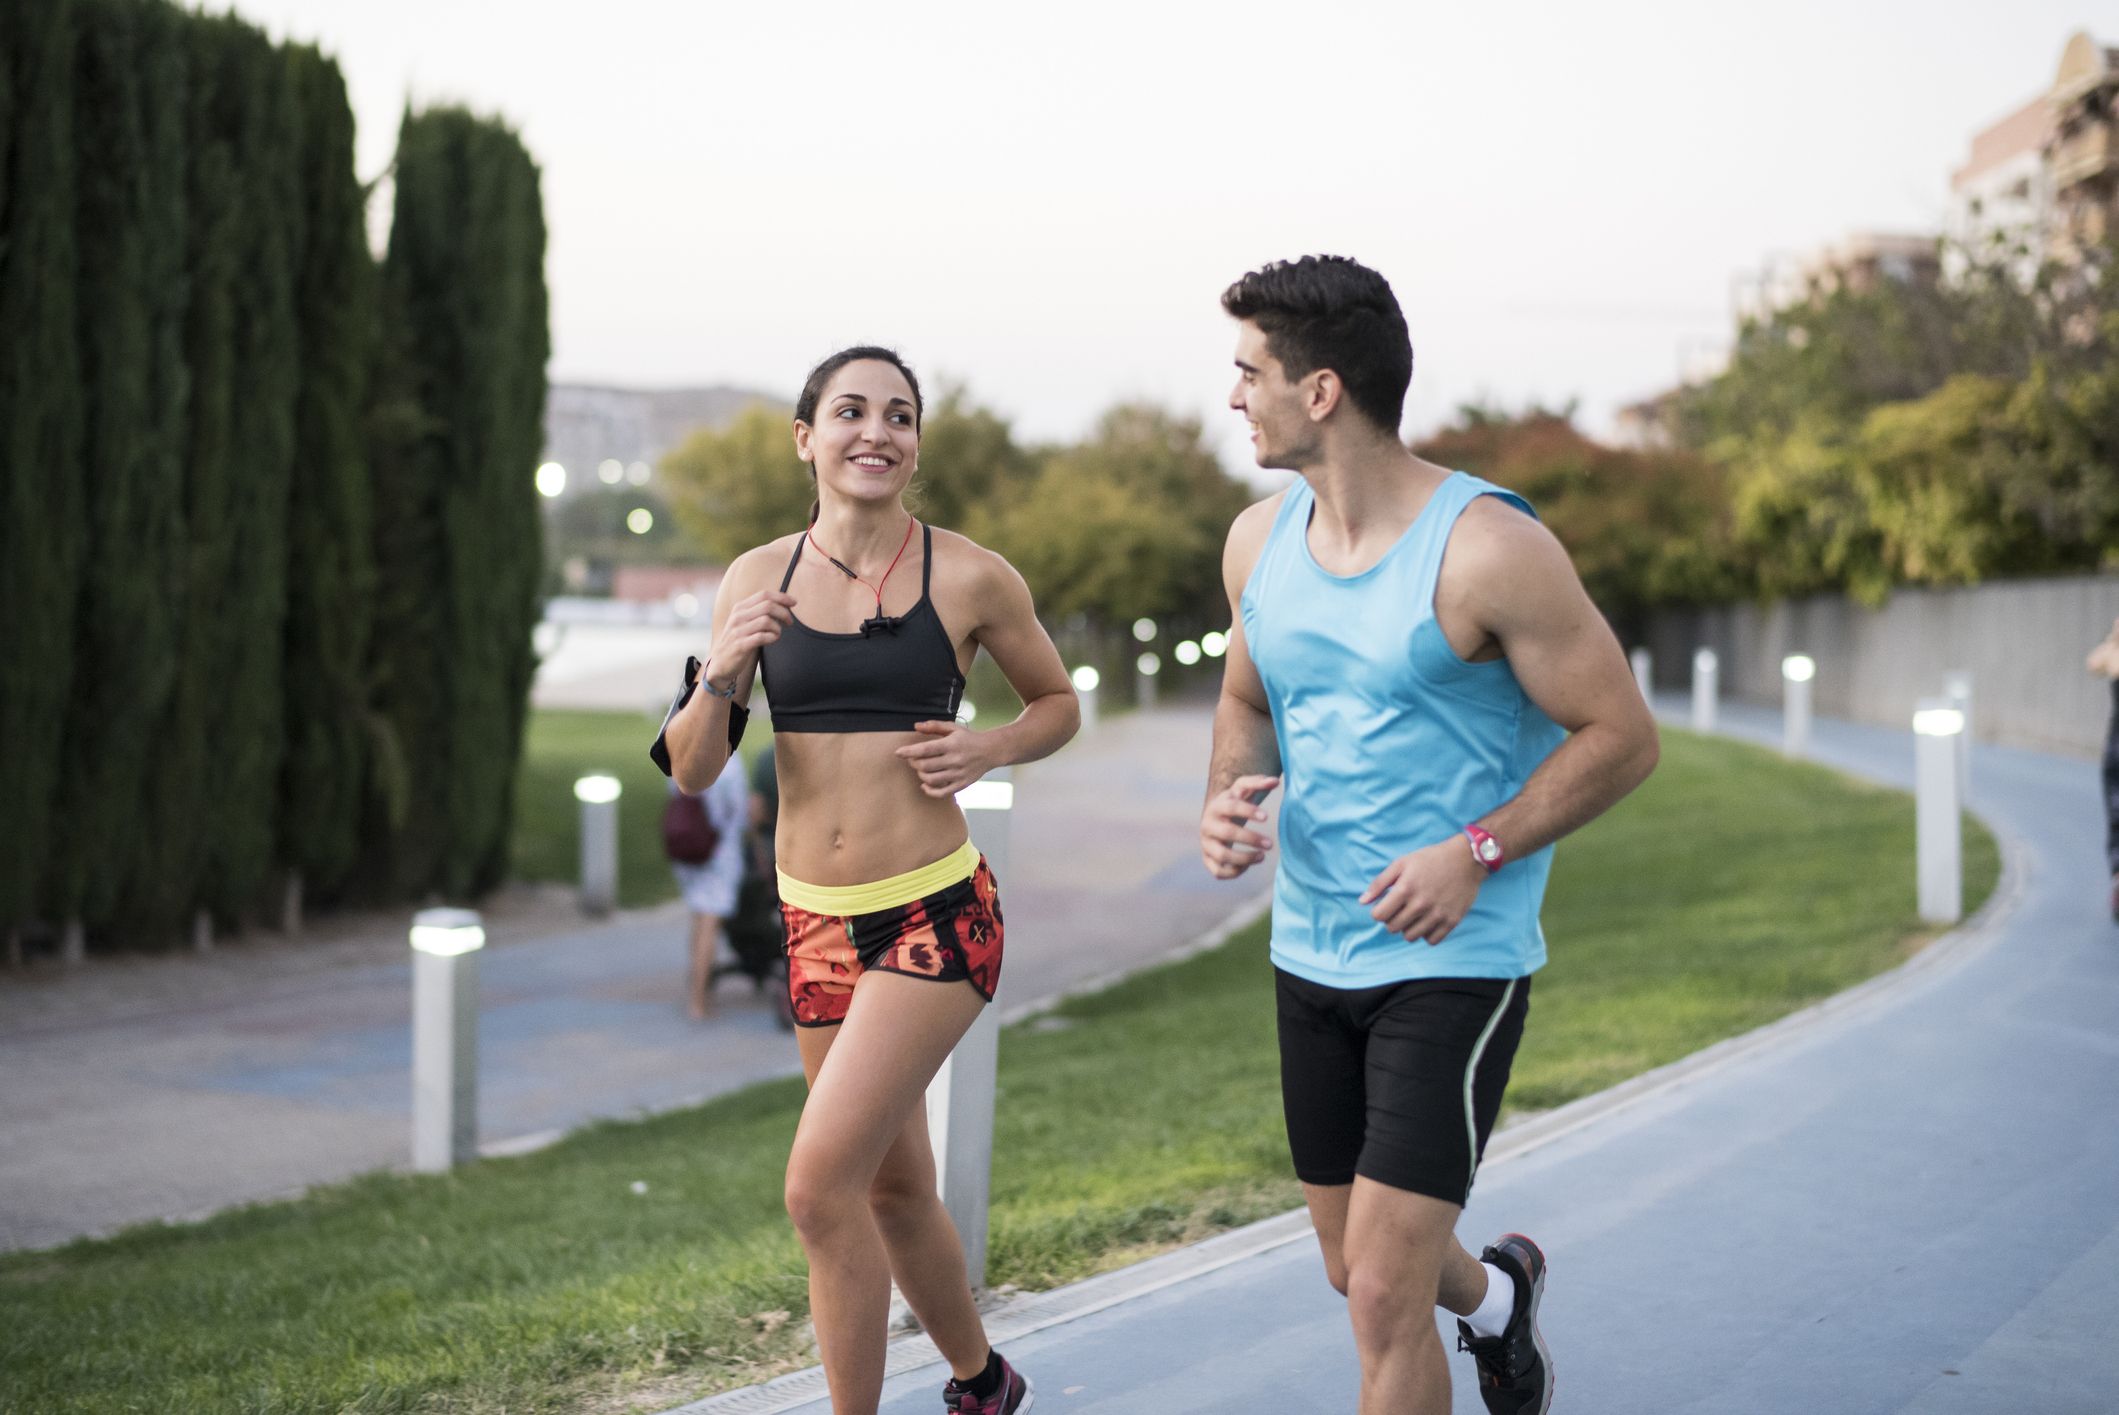 La rutina de entrenamiento que va a sustituir al running, ayuda a adelgazar  y ganar músculo desde casa